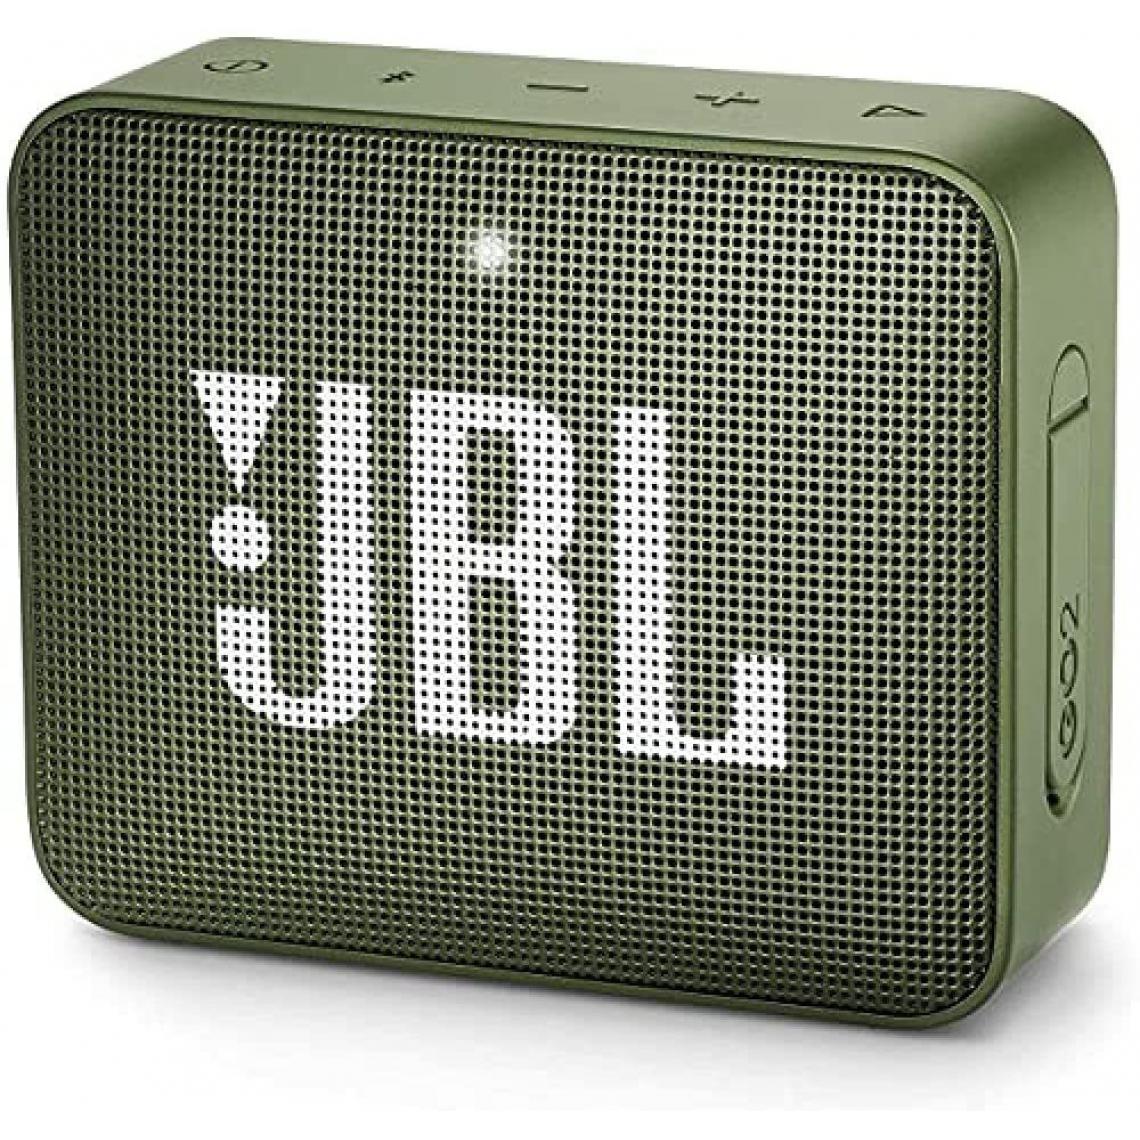 Chrono - Mini Enceinte Bluetooth portable - Étanche pour piscine & plage IPX7 - Autonomie 16hrs - Qualité audio JBL,Vert - Enceintes Hifi